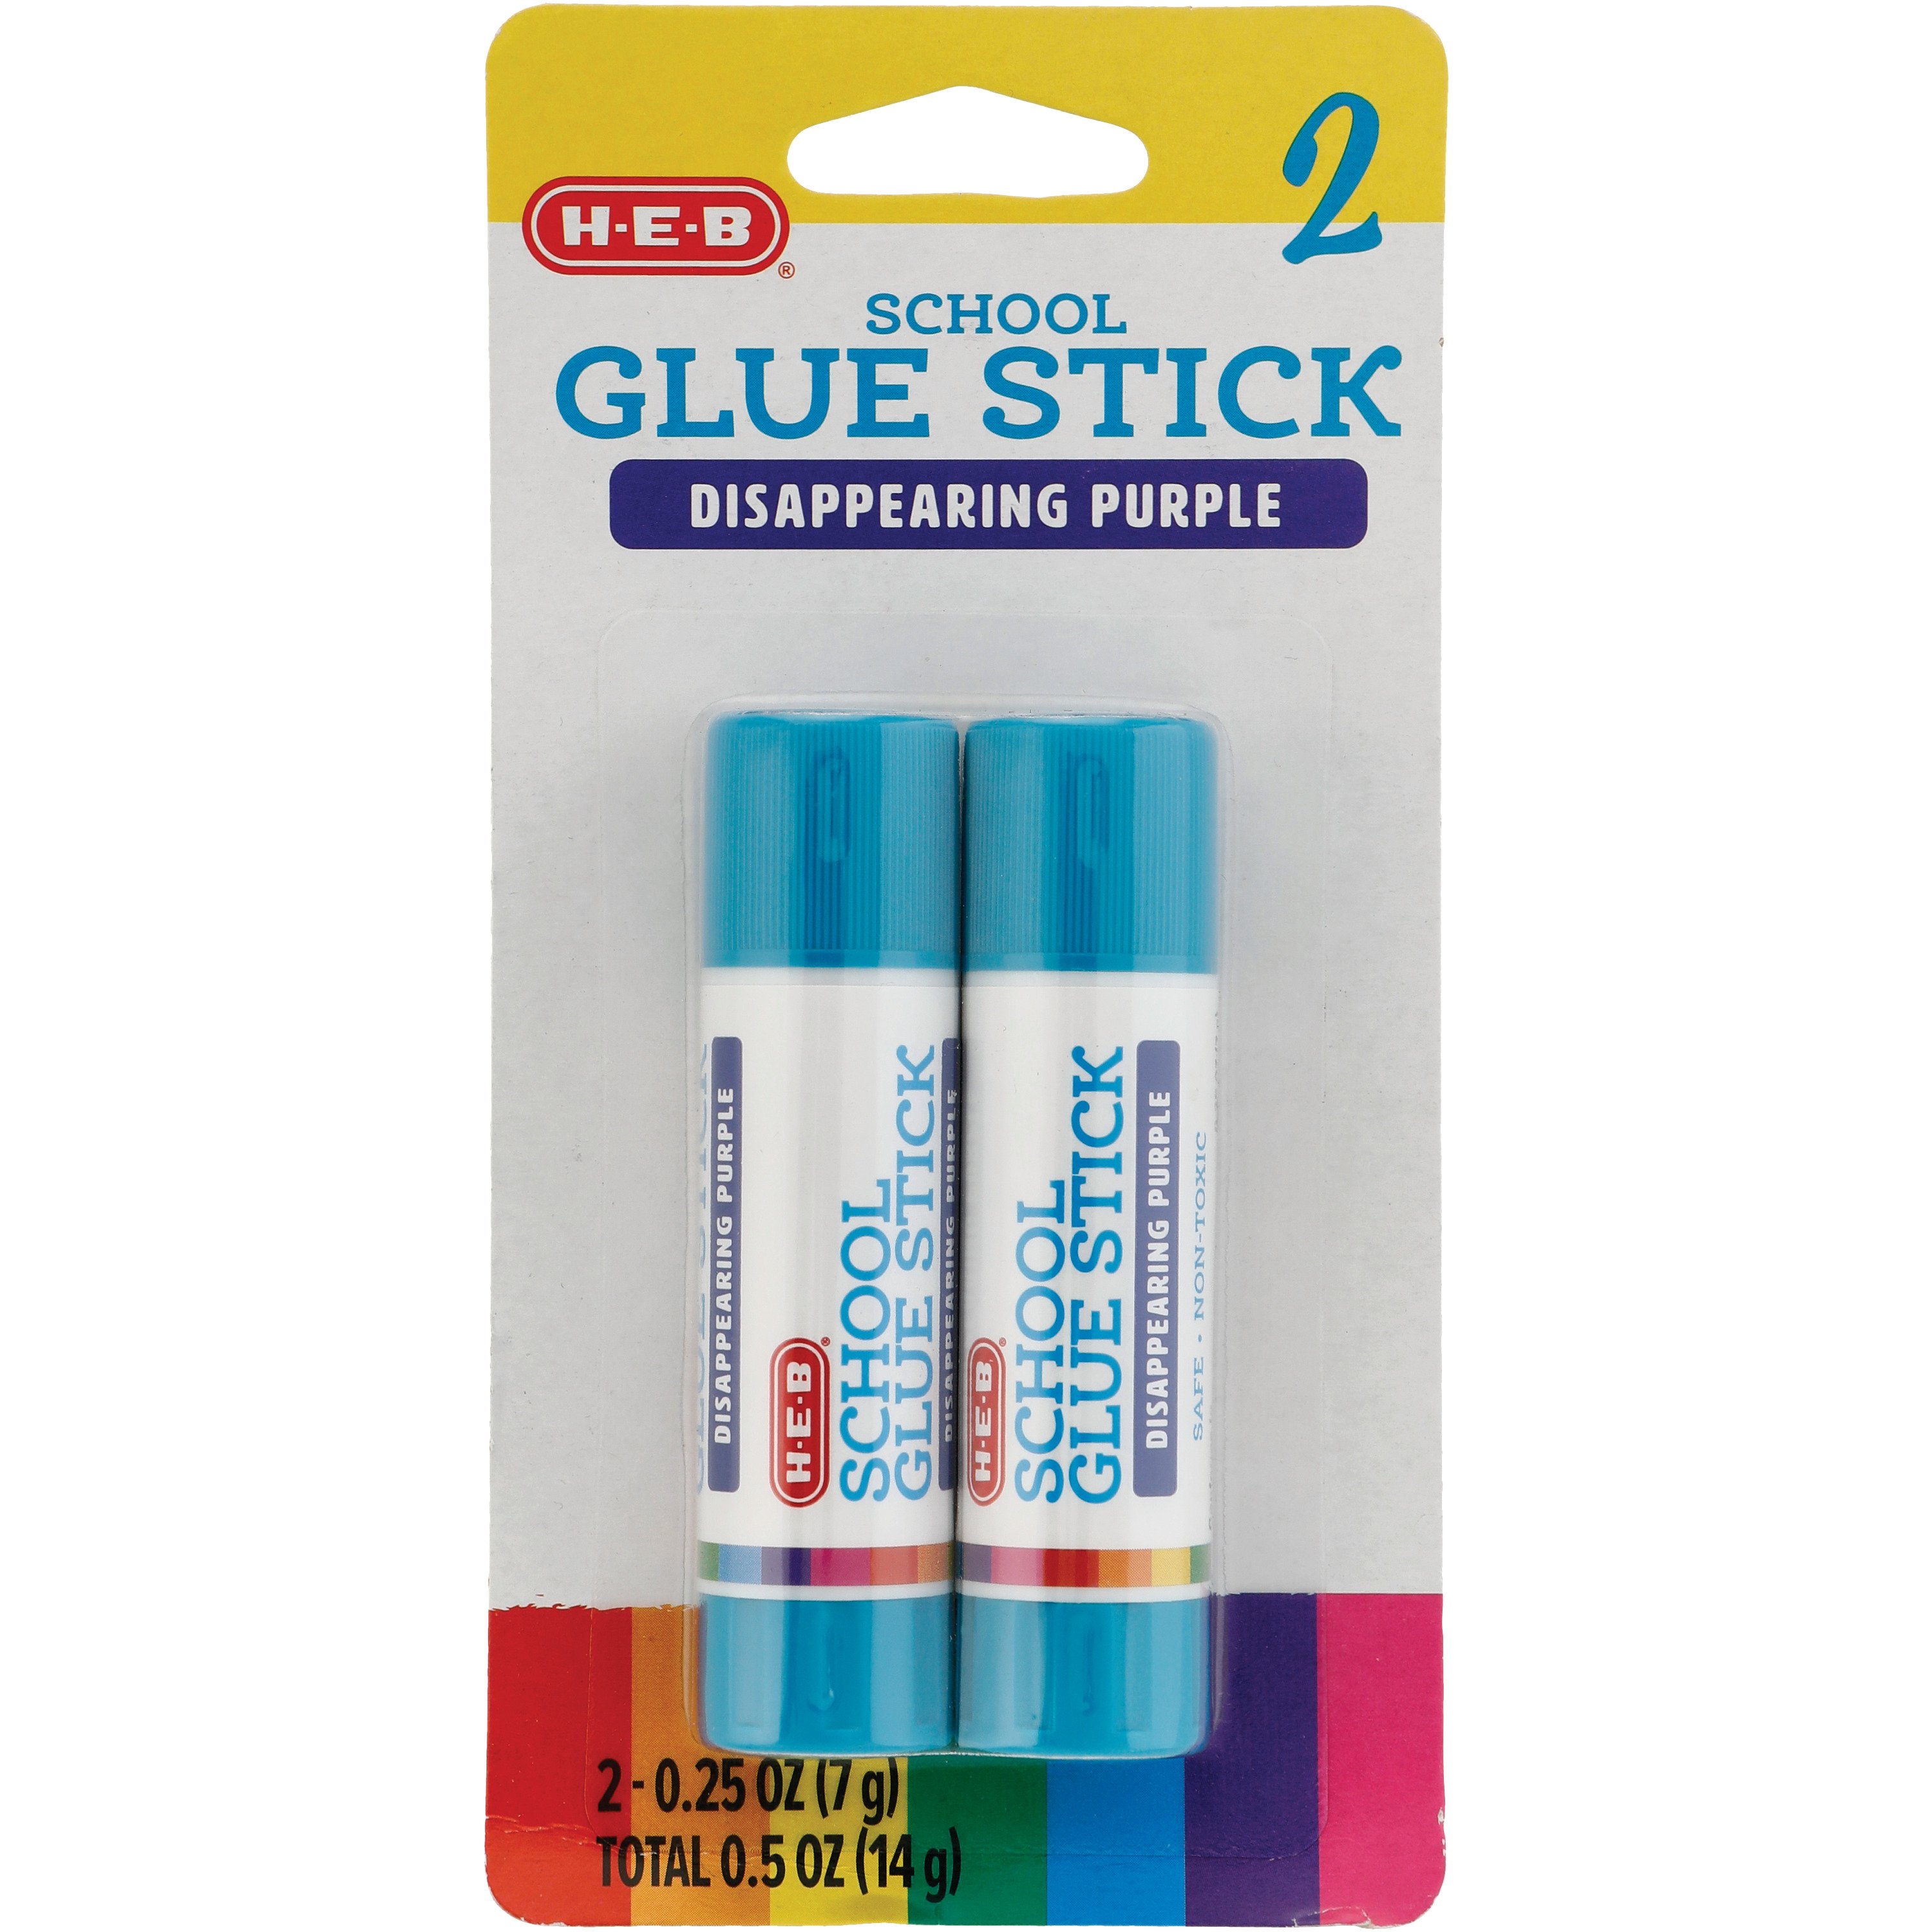 H-E-B School Glue Sticks - Disappearing Purple - Shop Glue at H-E-B